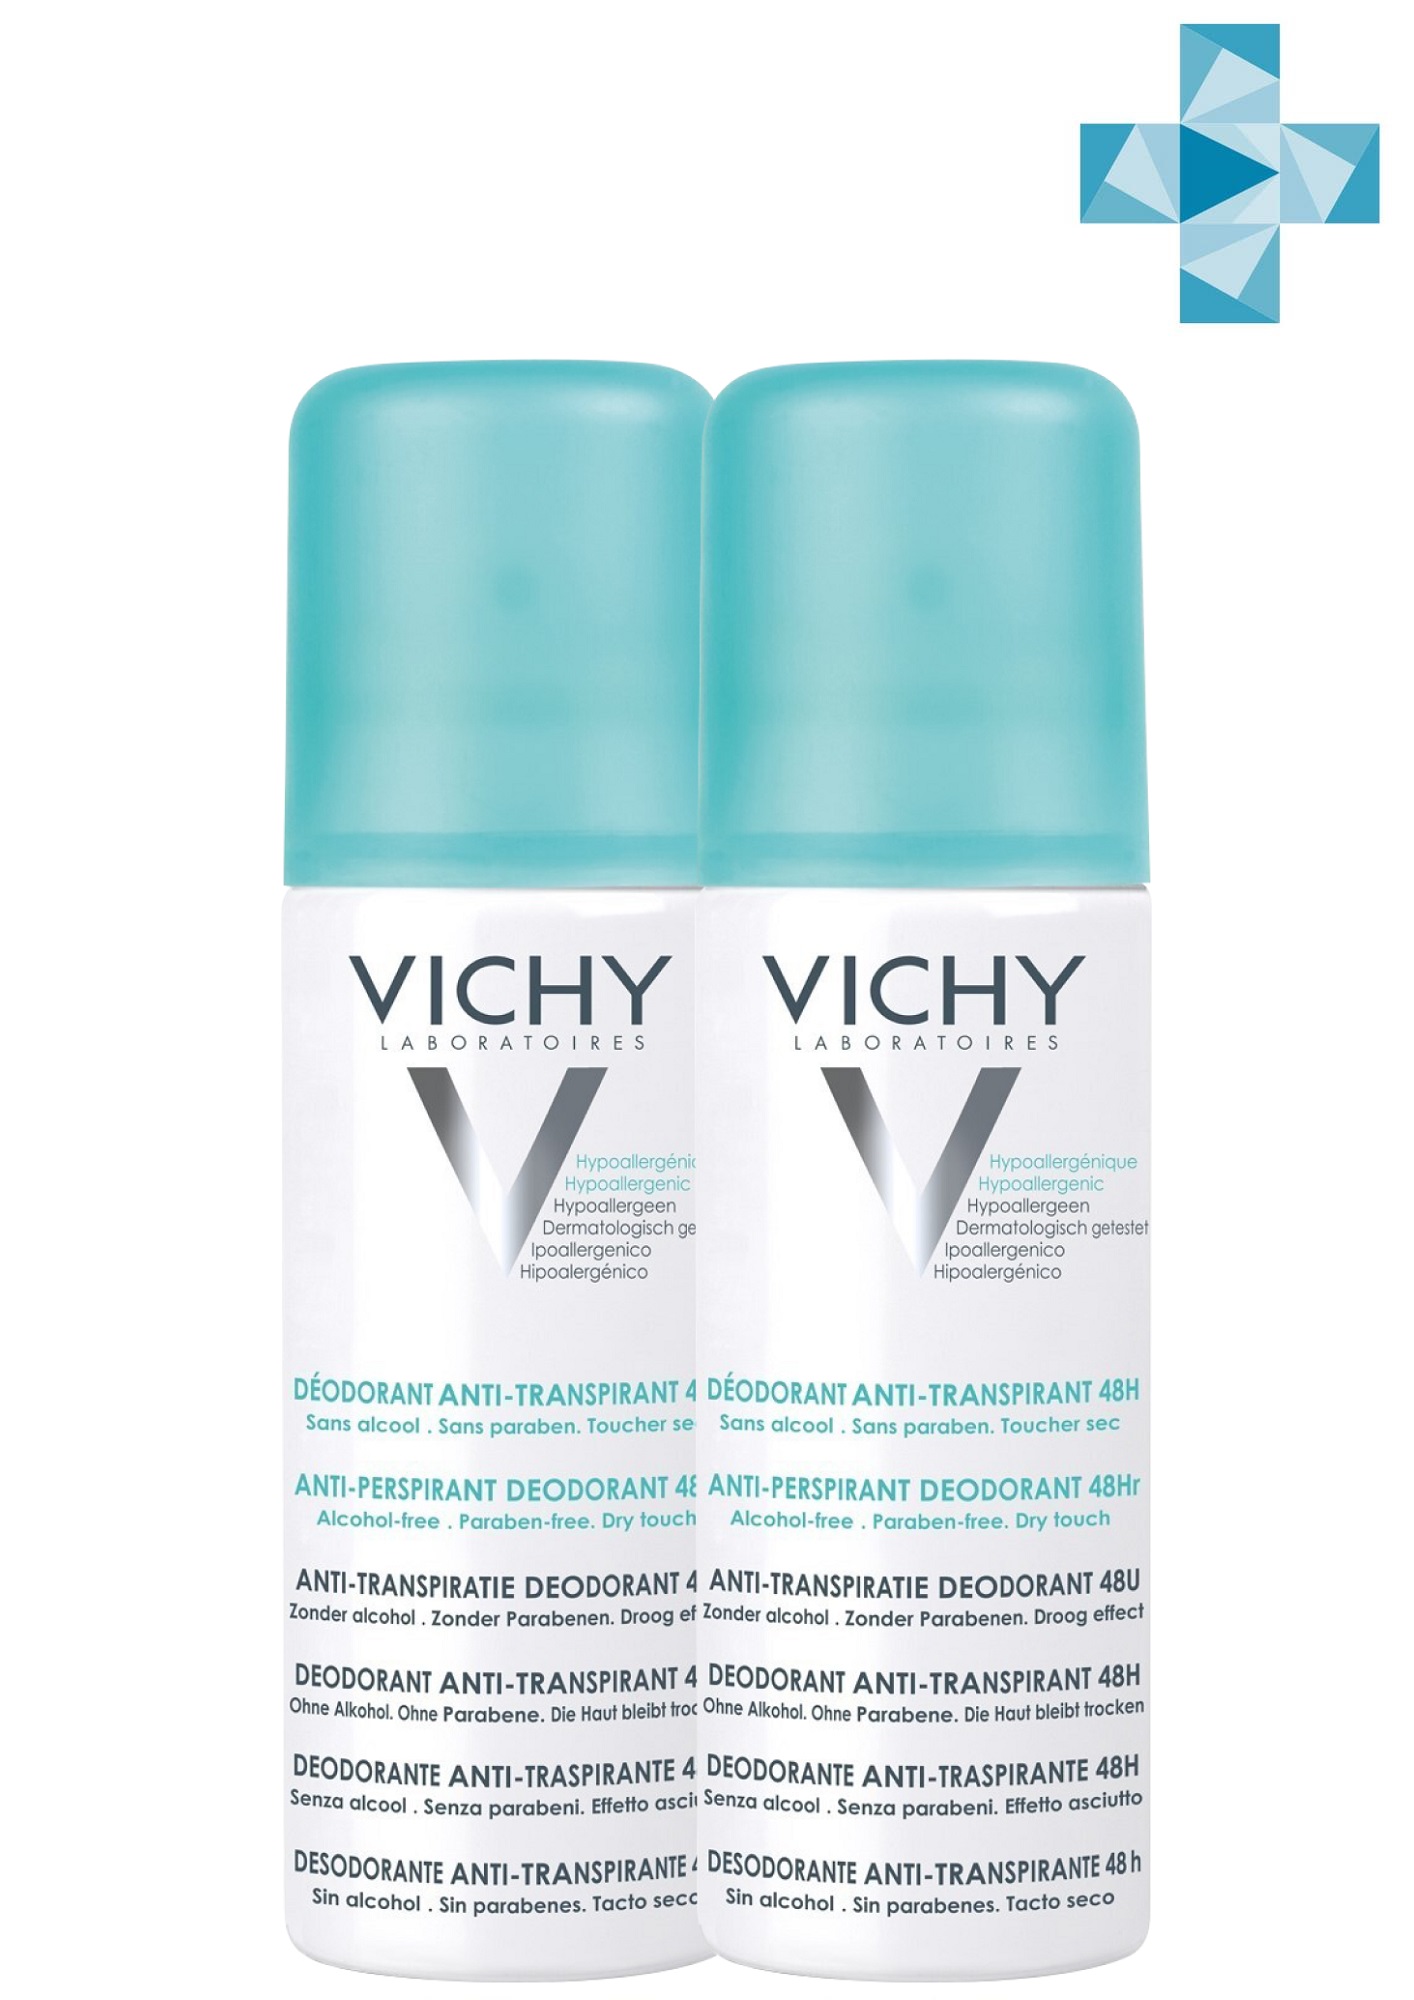 Vichy Комплект Дезодорант-аэрозоль регулирующий избыточное потоотделение 48 часов, 2 х 125 мл (Vichy, Deodorant) vichy комплект дезодорант аэрозоль регулирующий избыточное потоотделение 48 часов 2 х 125 мл vichy deodorant